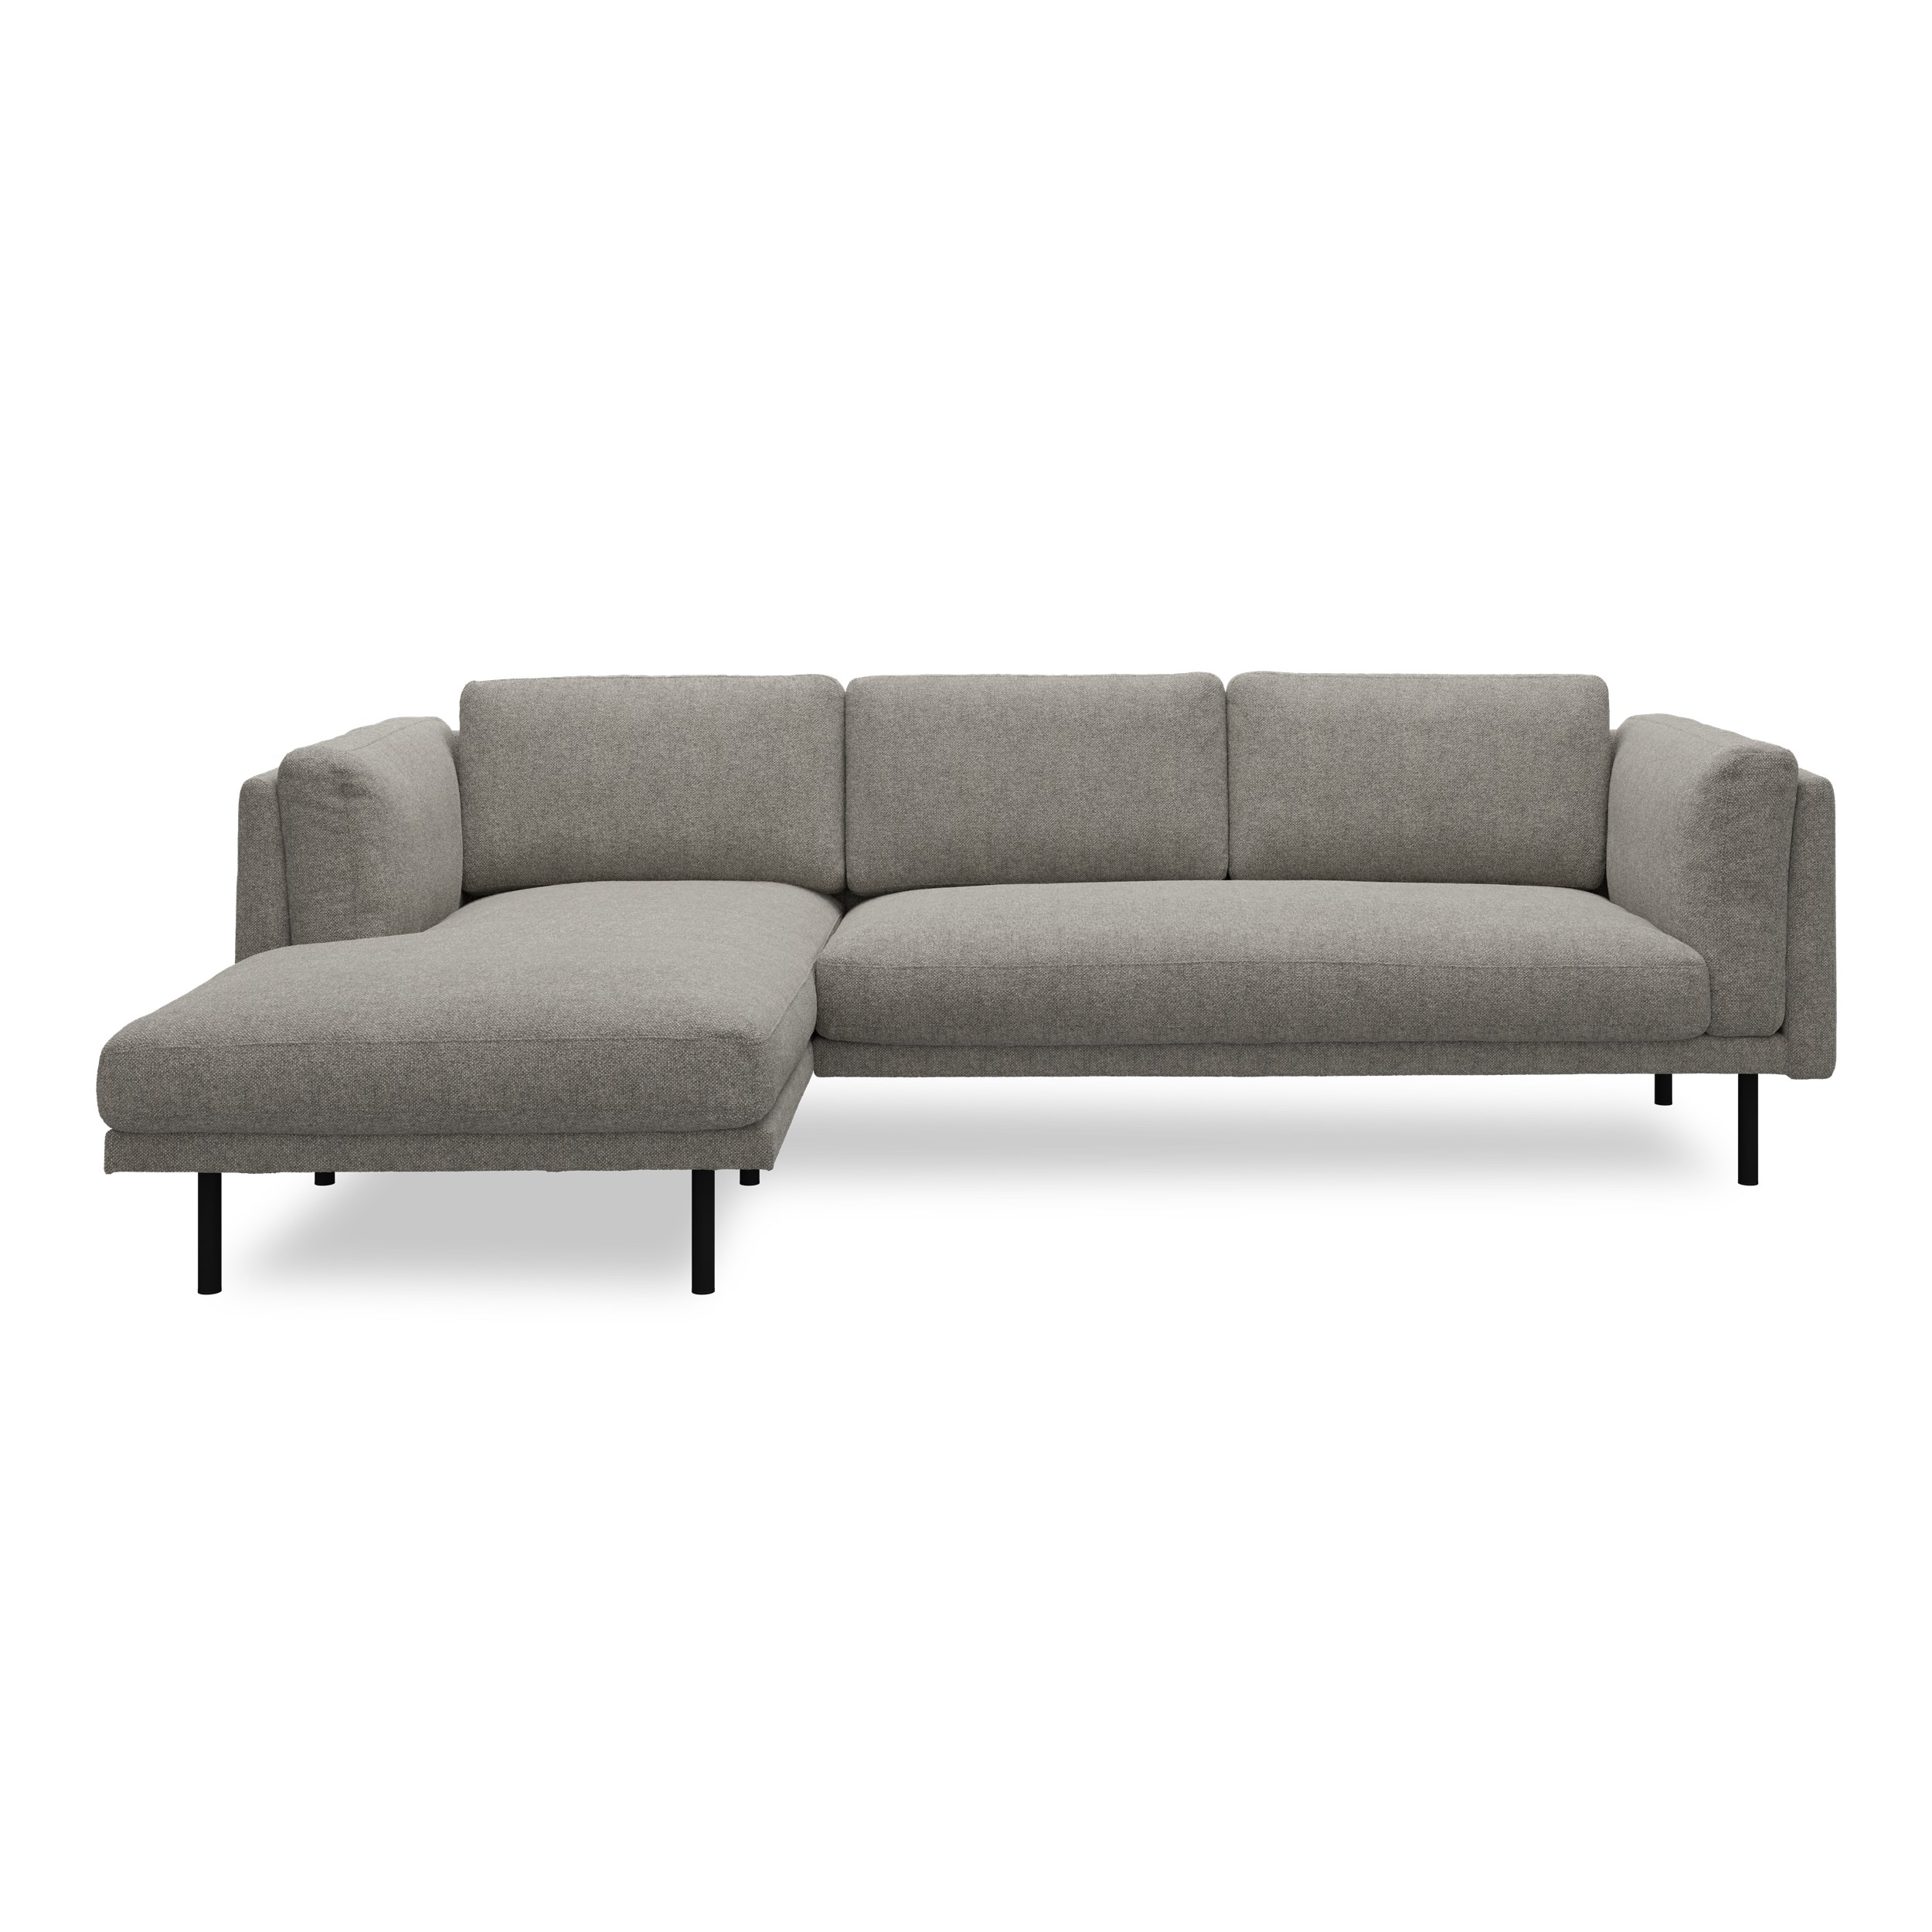 Nebel vänstervänd soffa med schäslong - Rate 108 Wood textil och svart pulverlackerad metall